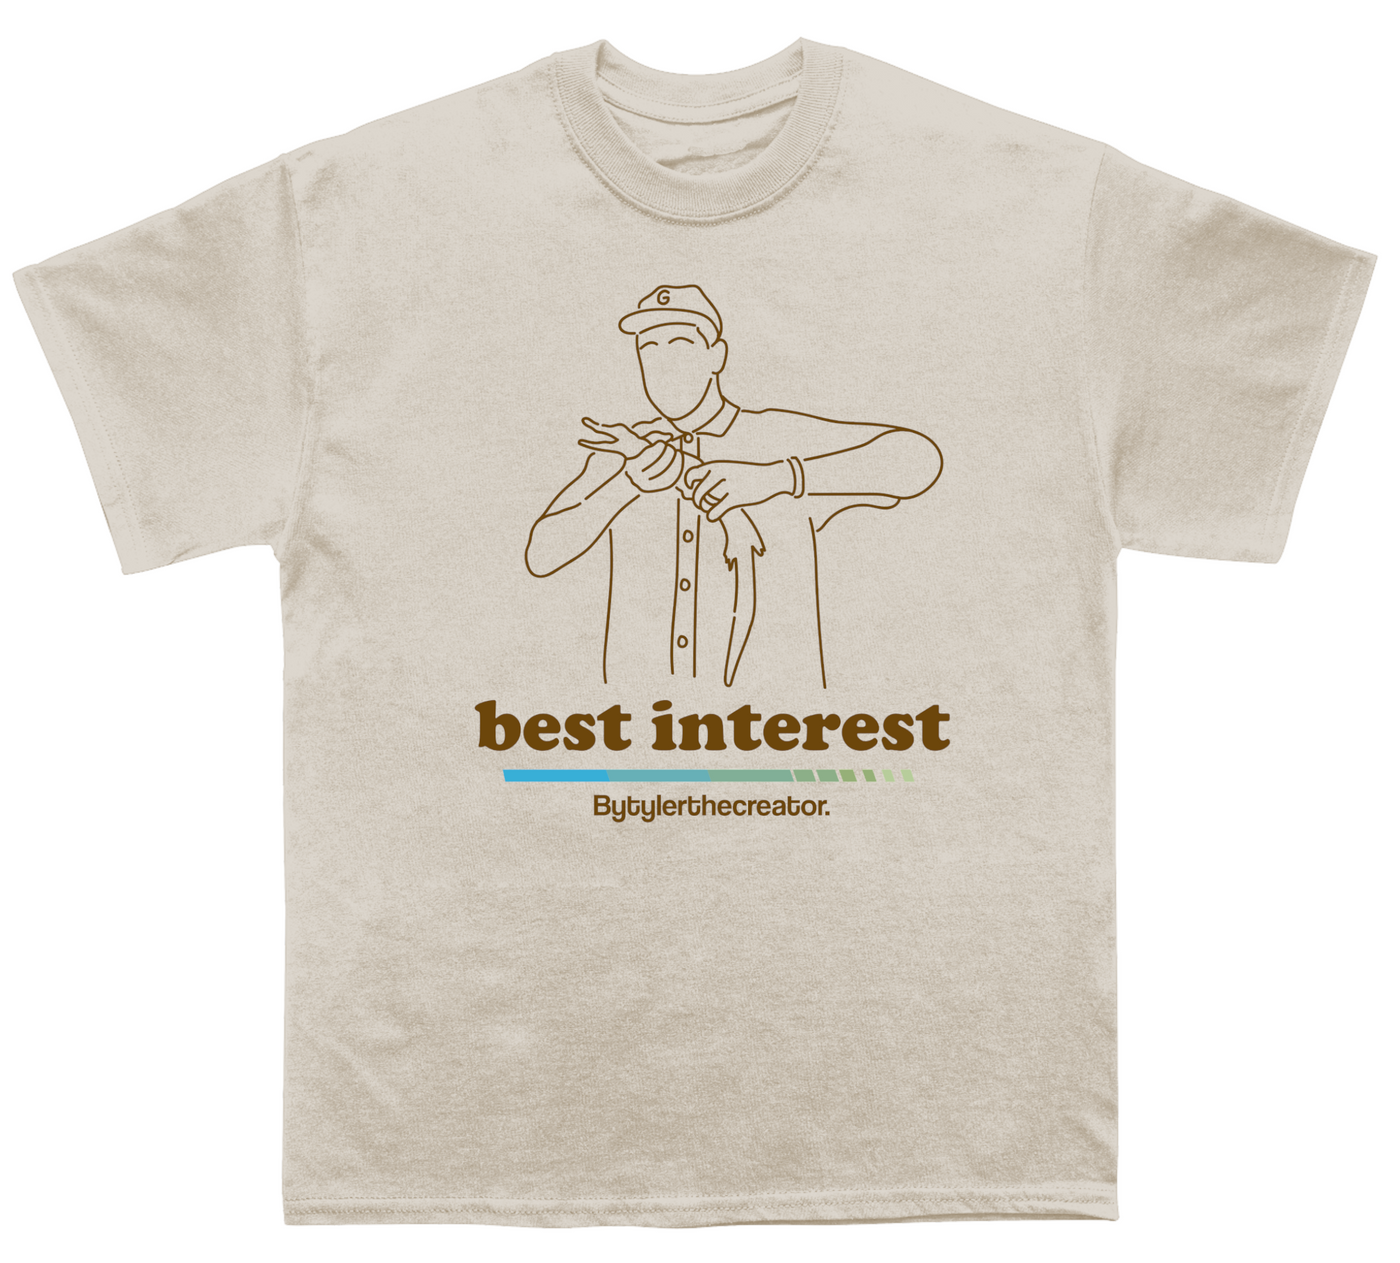 Tyler Best Interest T-shirt